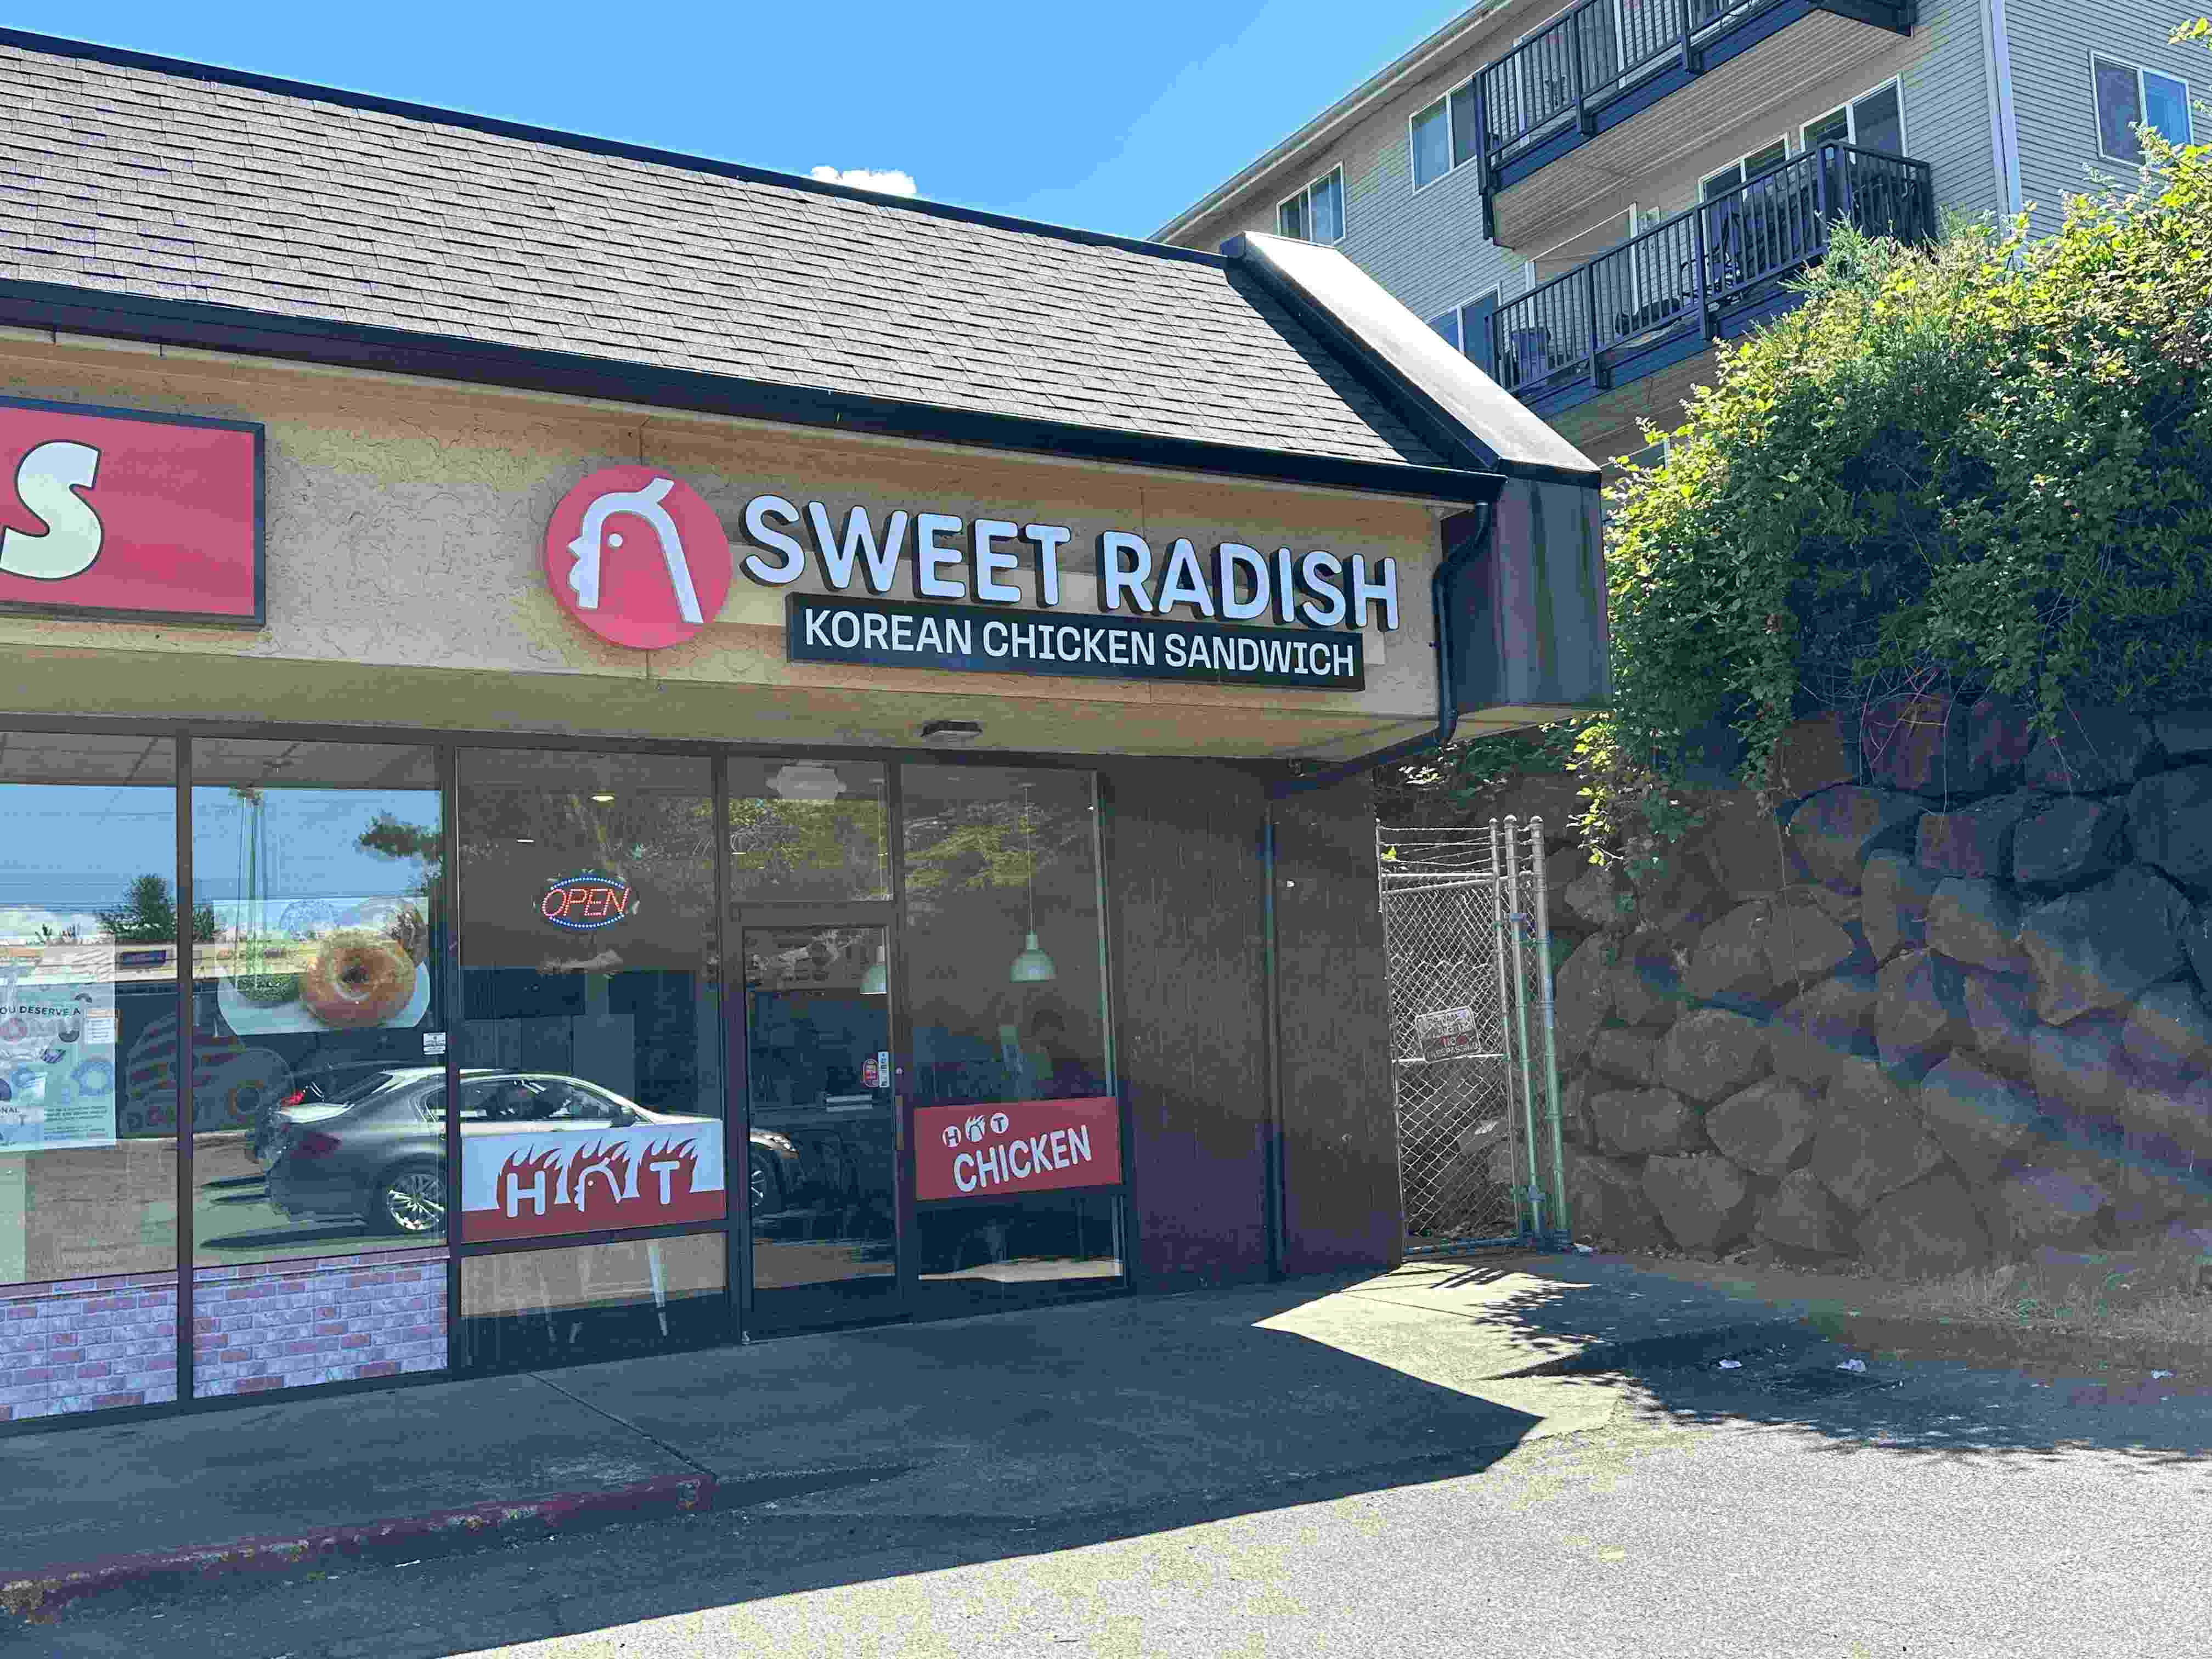 The storefront of SWEET RADISH.